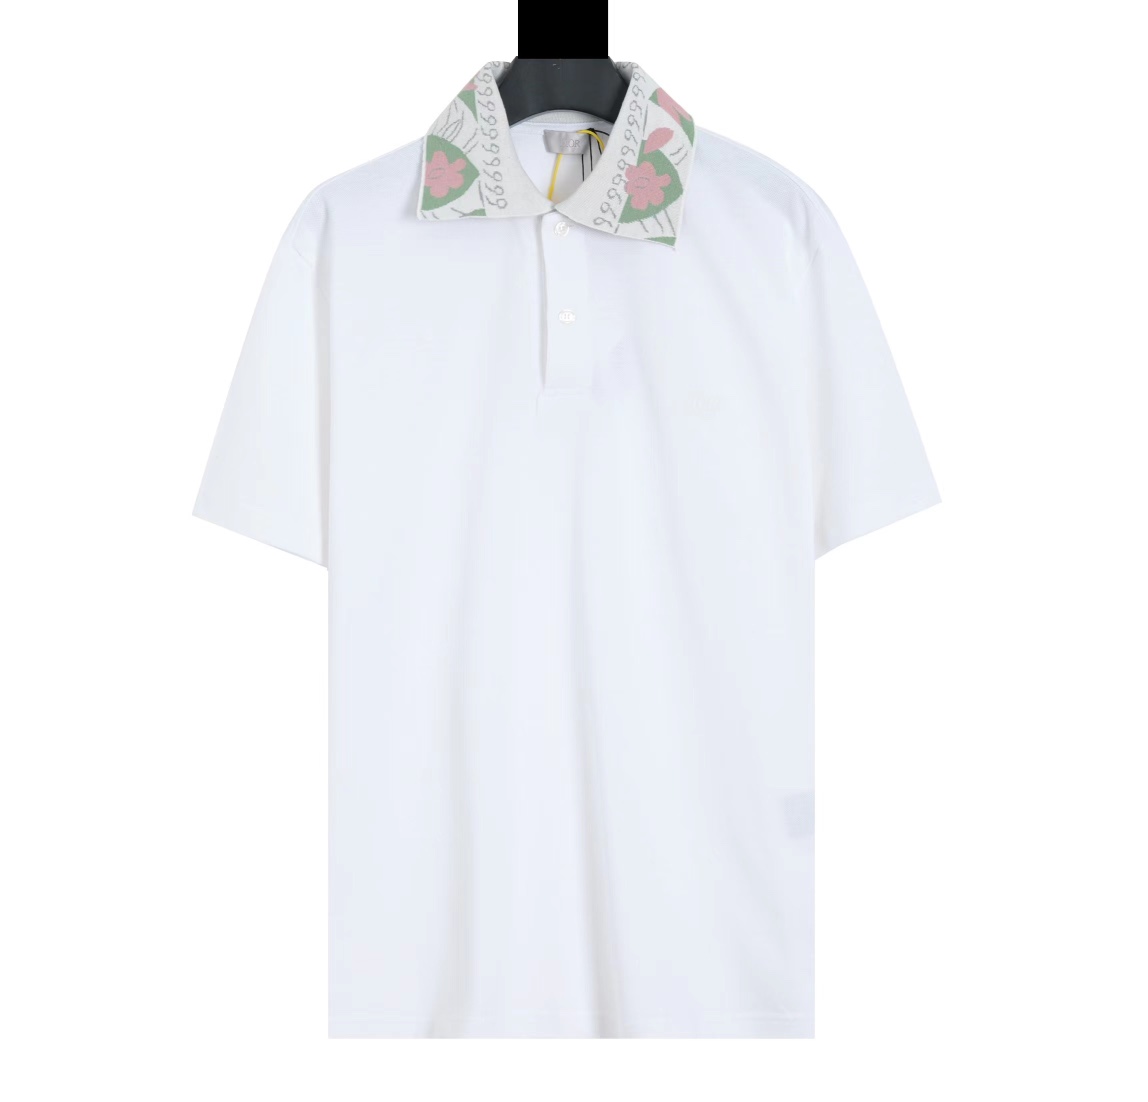 Dior Garden polo shirt Shirt